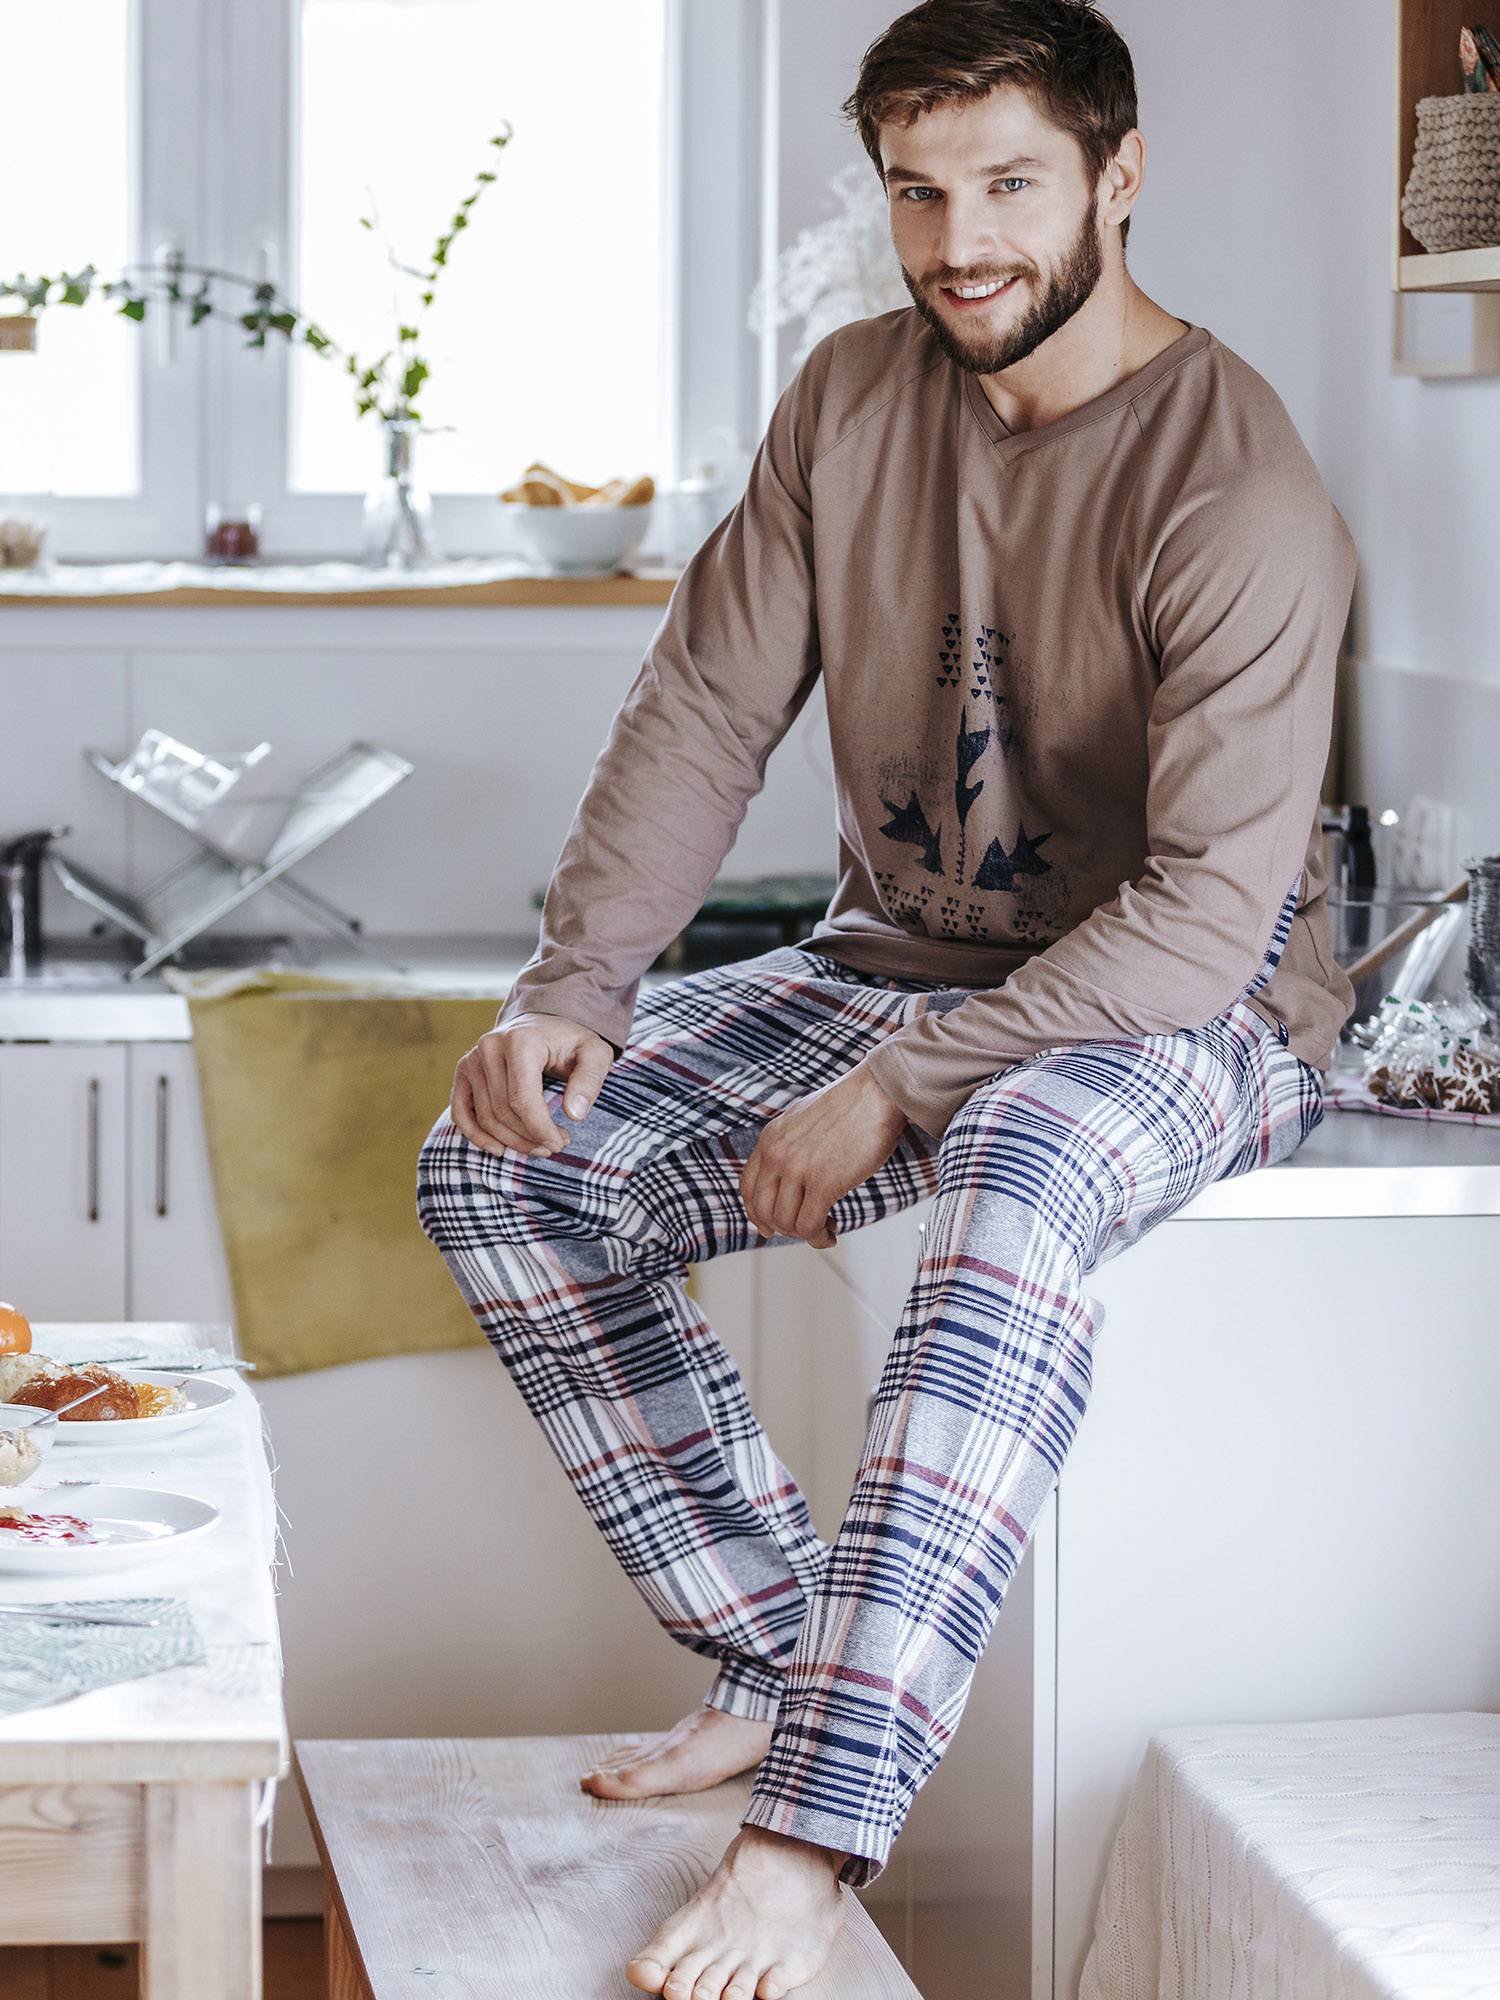 Вон майку и спортивные штаны: как выбрать домашнюю одежду современному мужчине